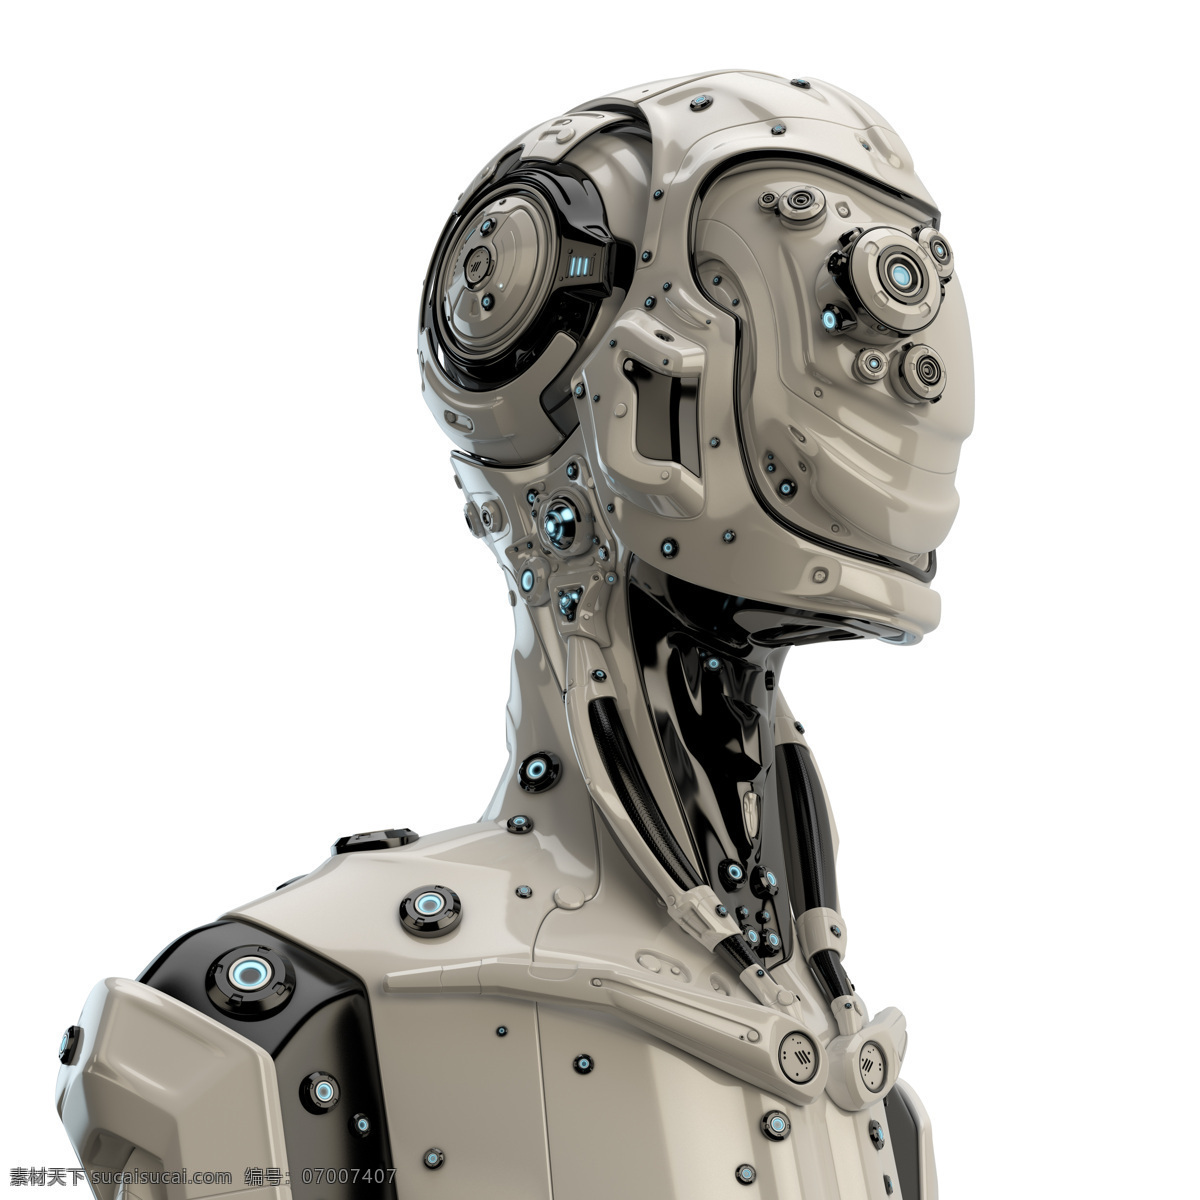 机器人 头部 肩部 机器 科技 其他人物 人物图片